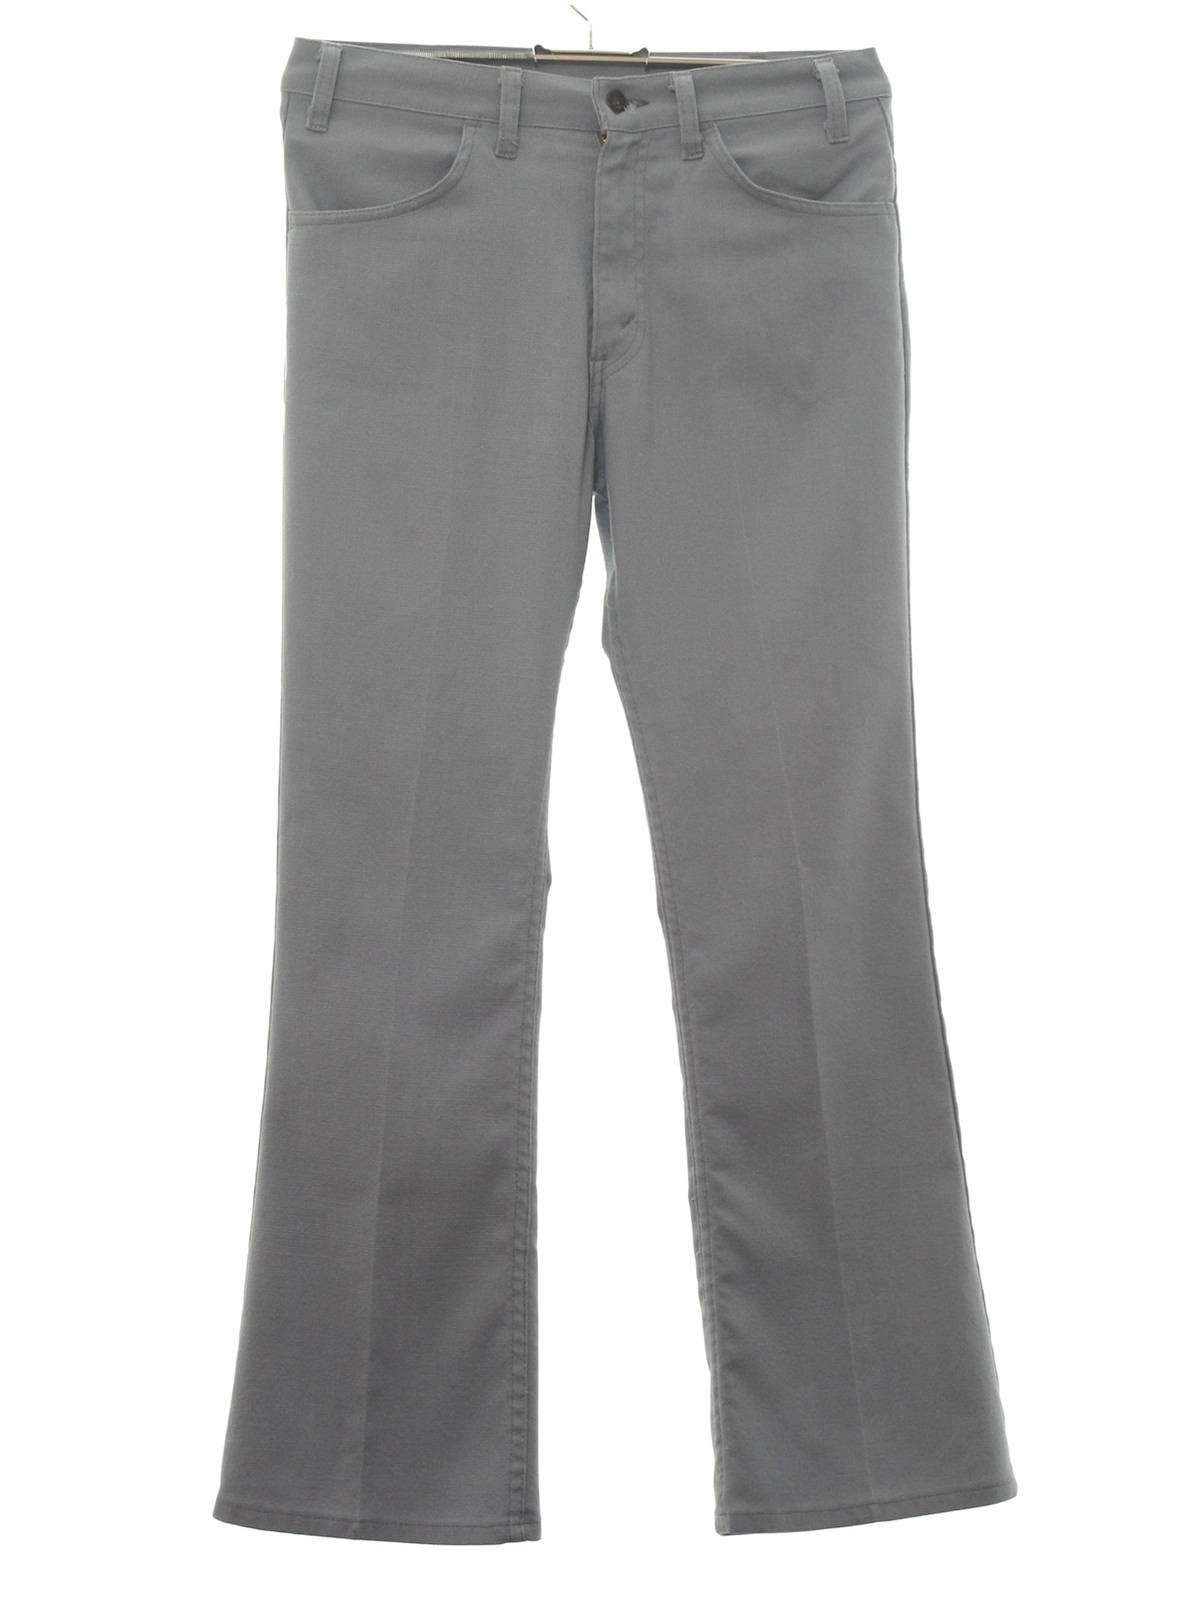 Levis 70's Vintage Flared Pants / Flares: 70s -Levis- Mens grey cotton ...